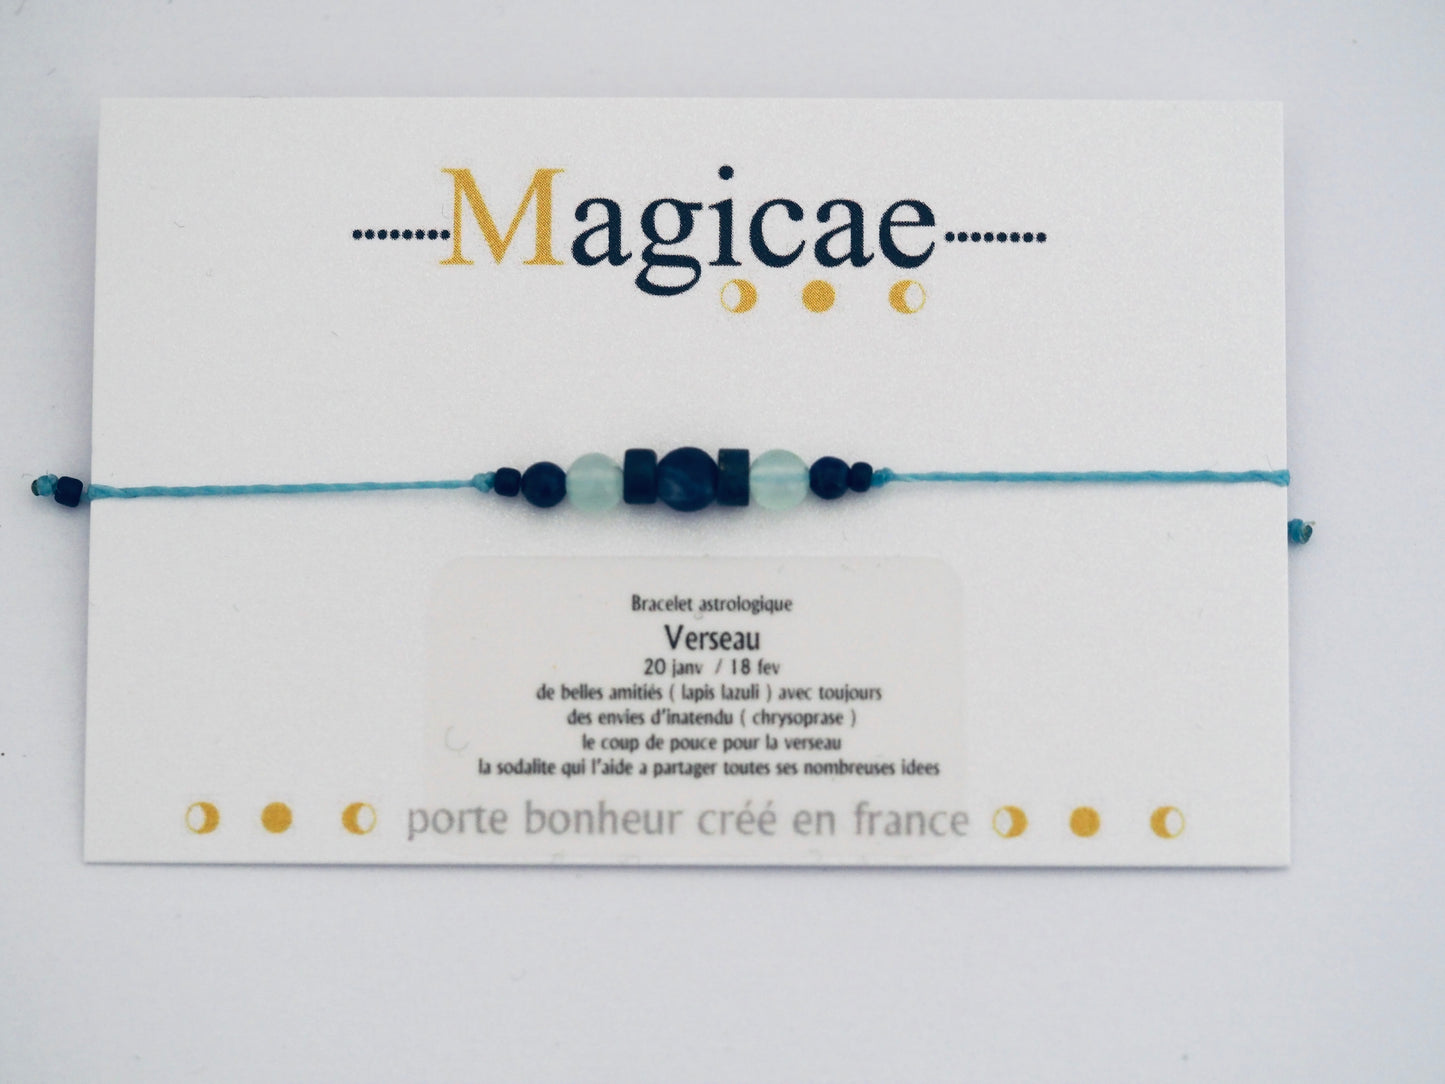 Bracelet astrologique verseau - Magicae